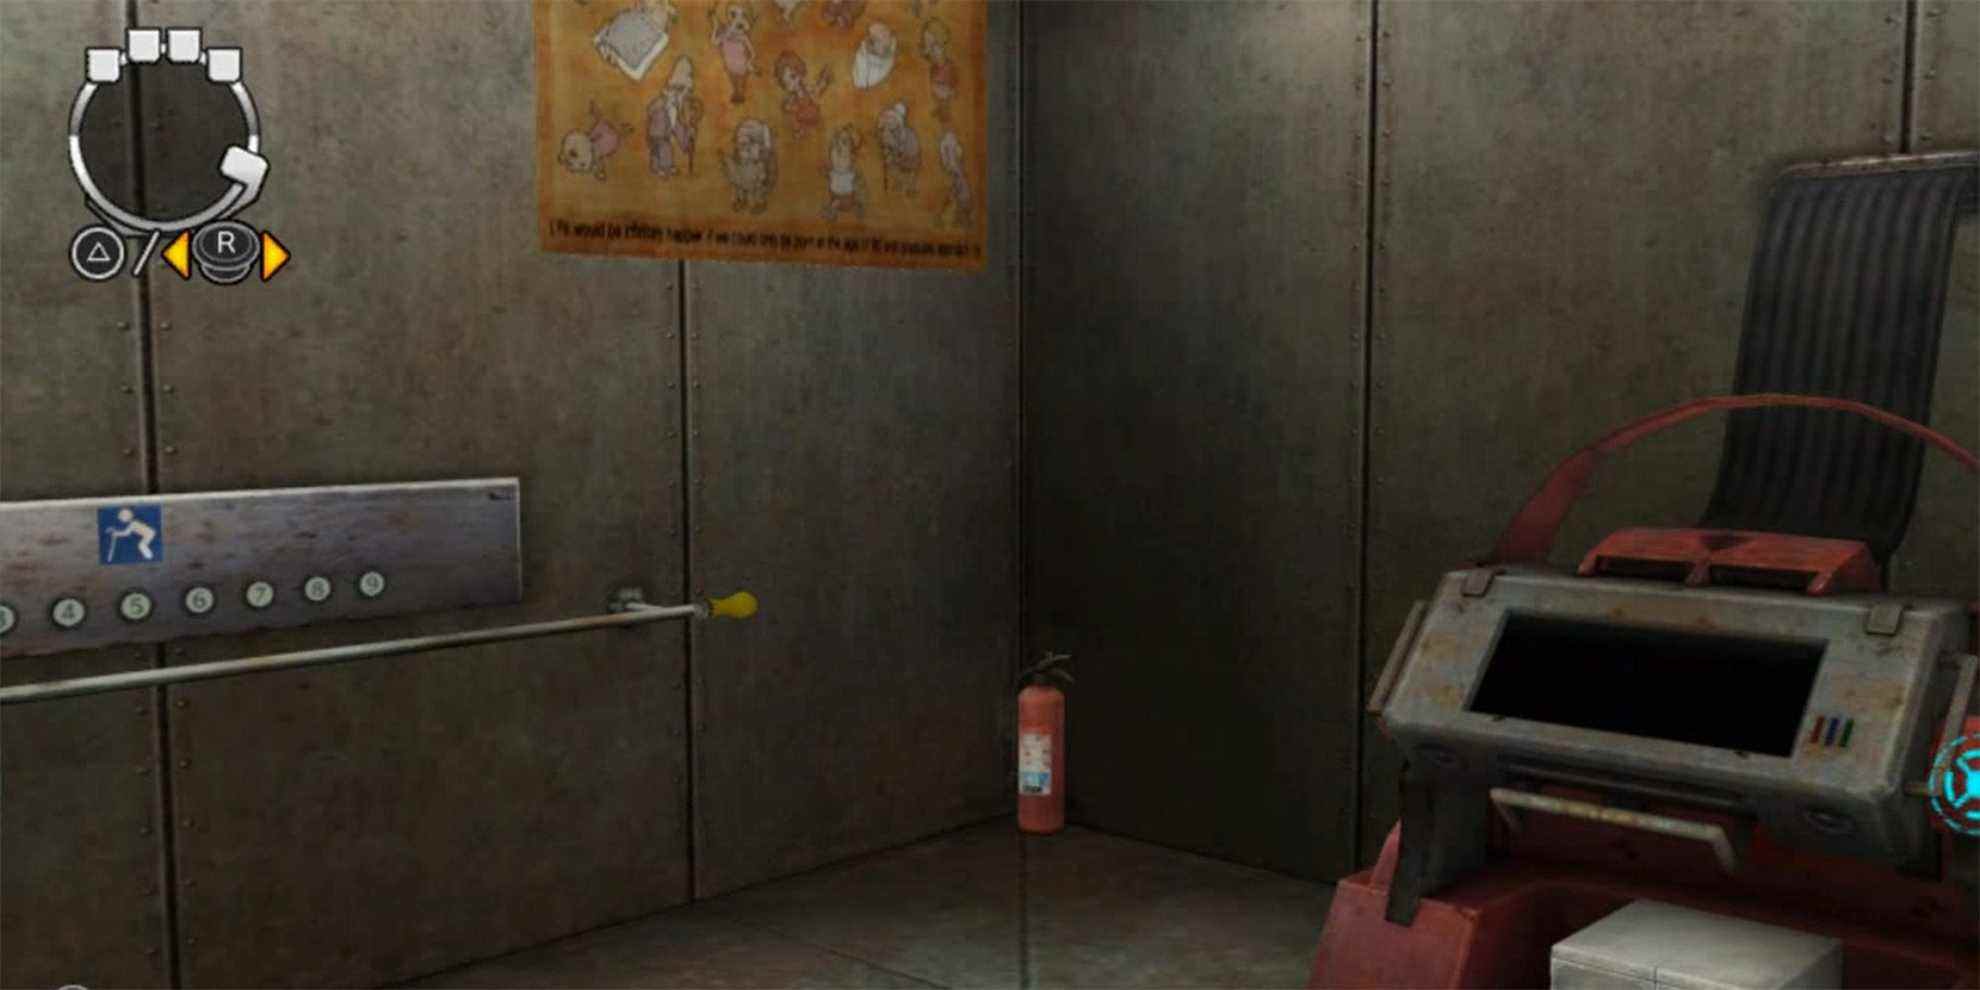 le mur droit de l'ascenseur, avec une machine rouge, un extincteur, une rampe de guidon et une affiche